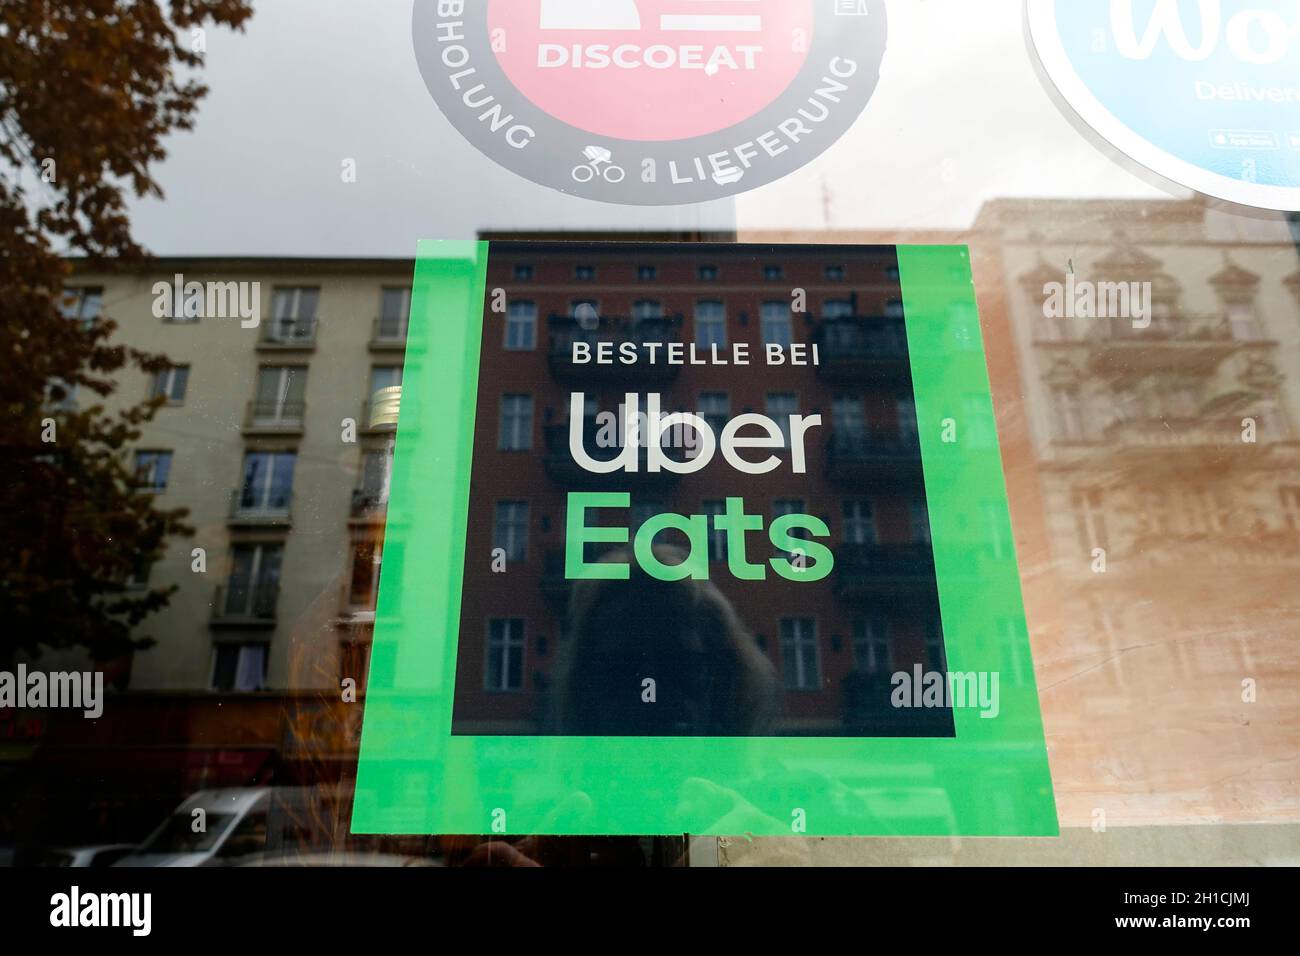 Bike of Uber eats, Berlin, Germany Stock Photo